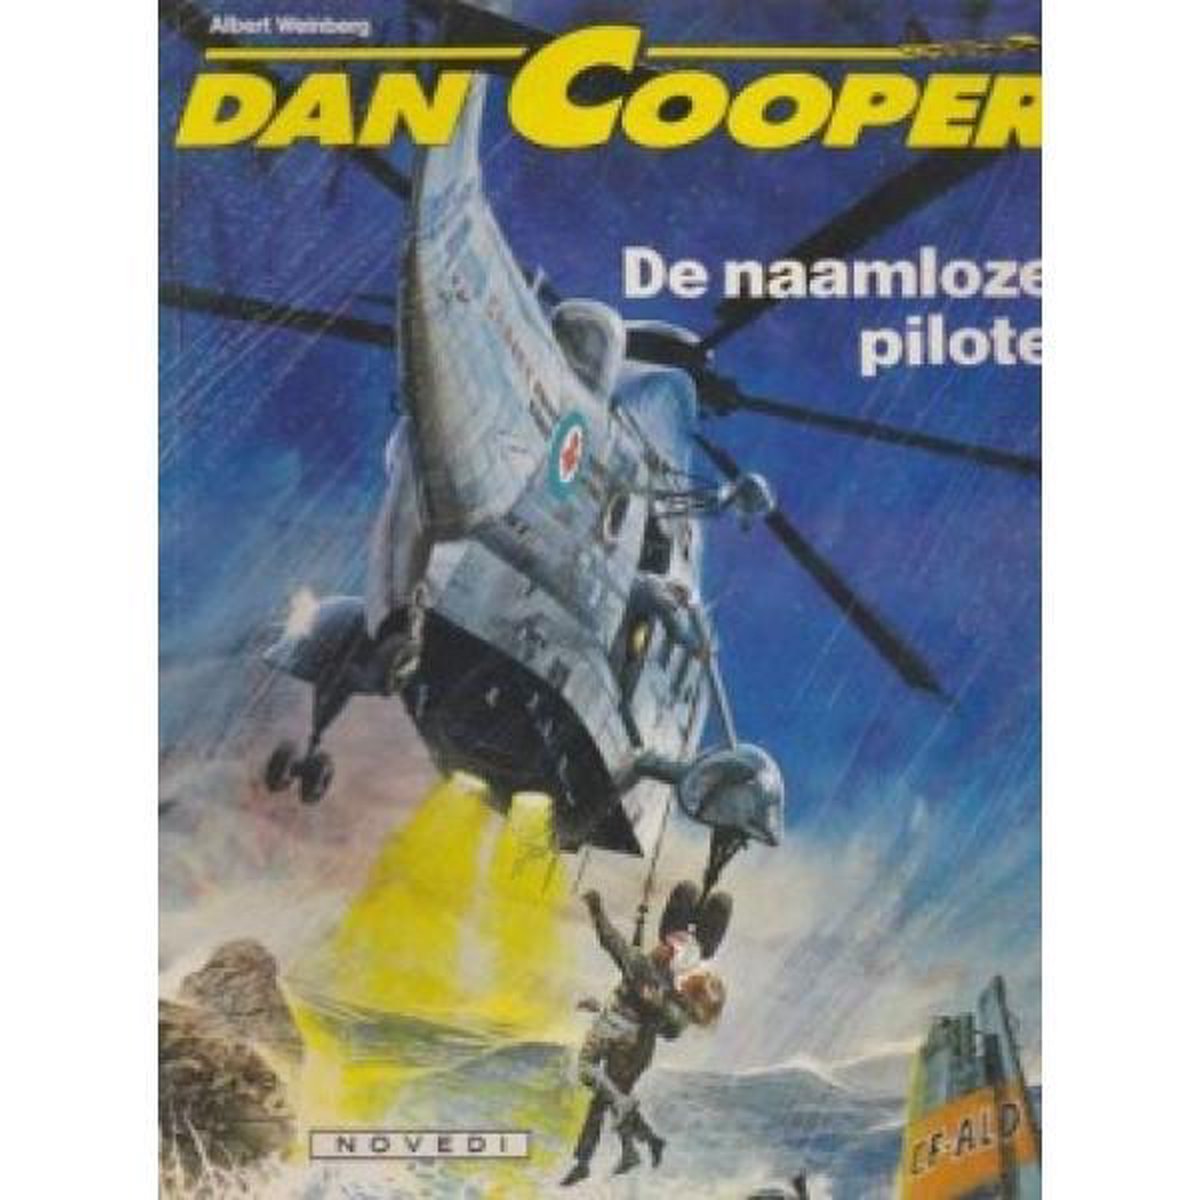 Dan Cooper - De naamloze pilote